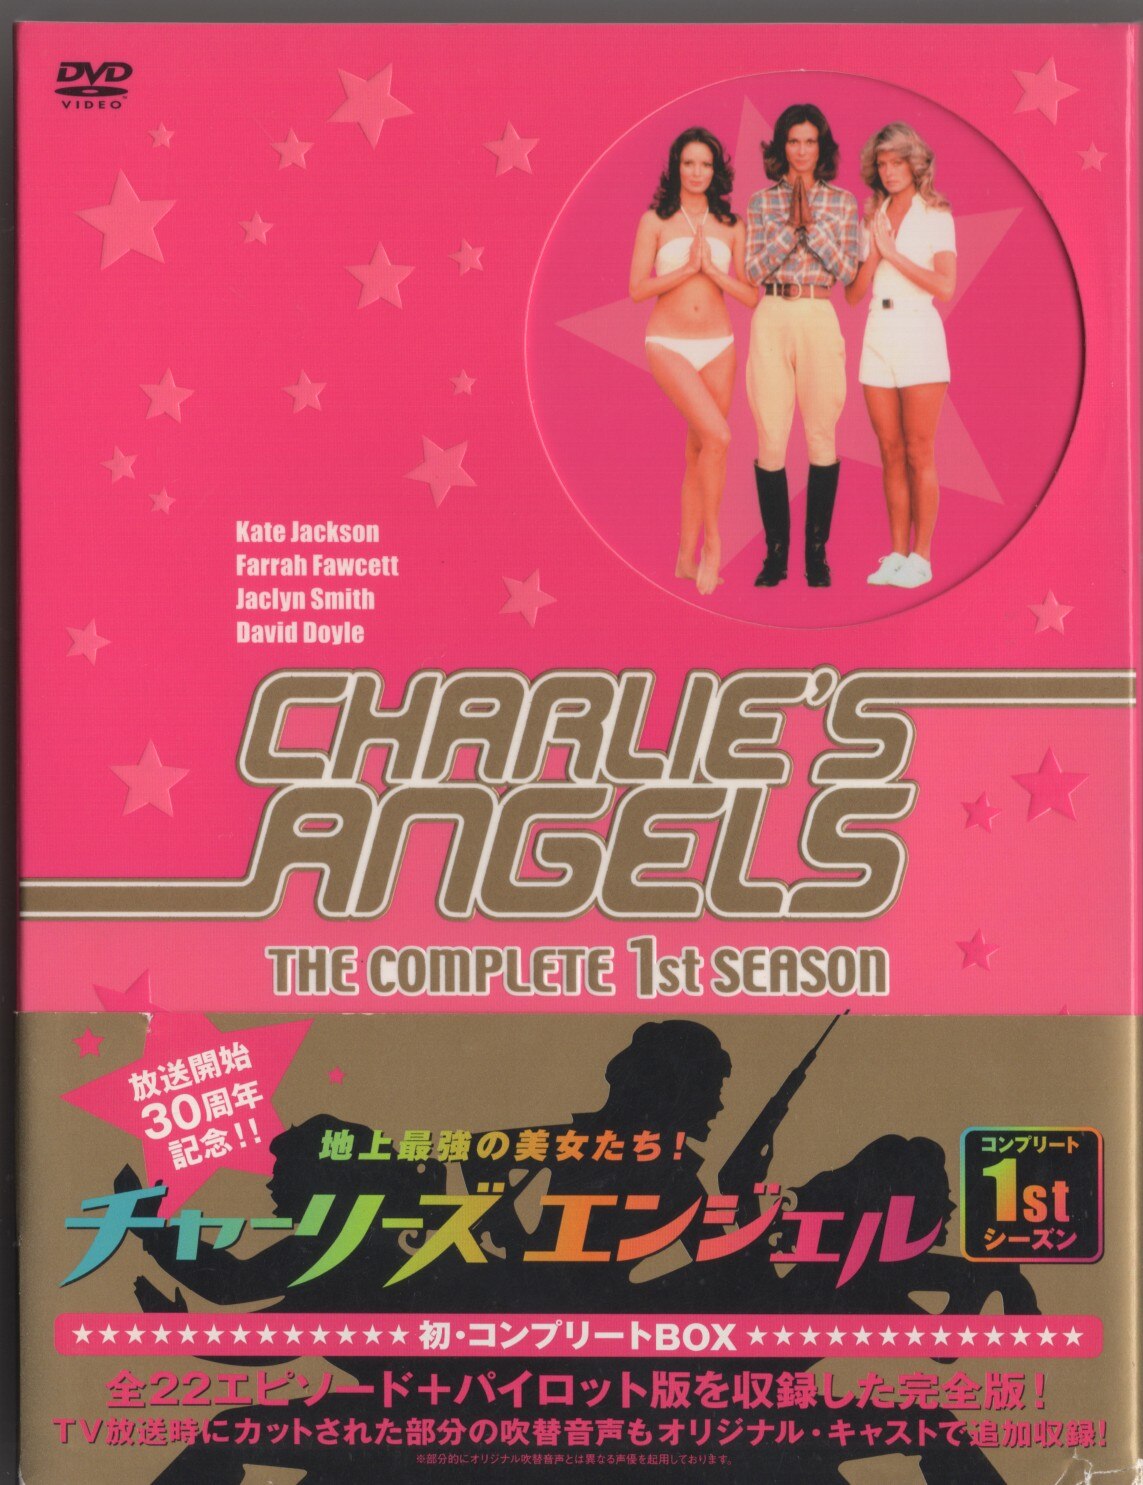 地上最強の美女たち! チャーリーズ・エンジェル コンプリート1stシーズン DVD-BOX